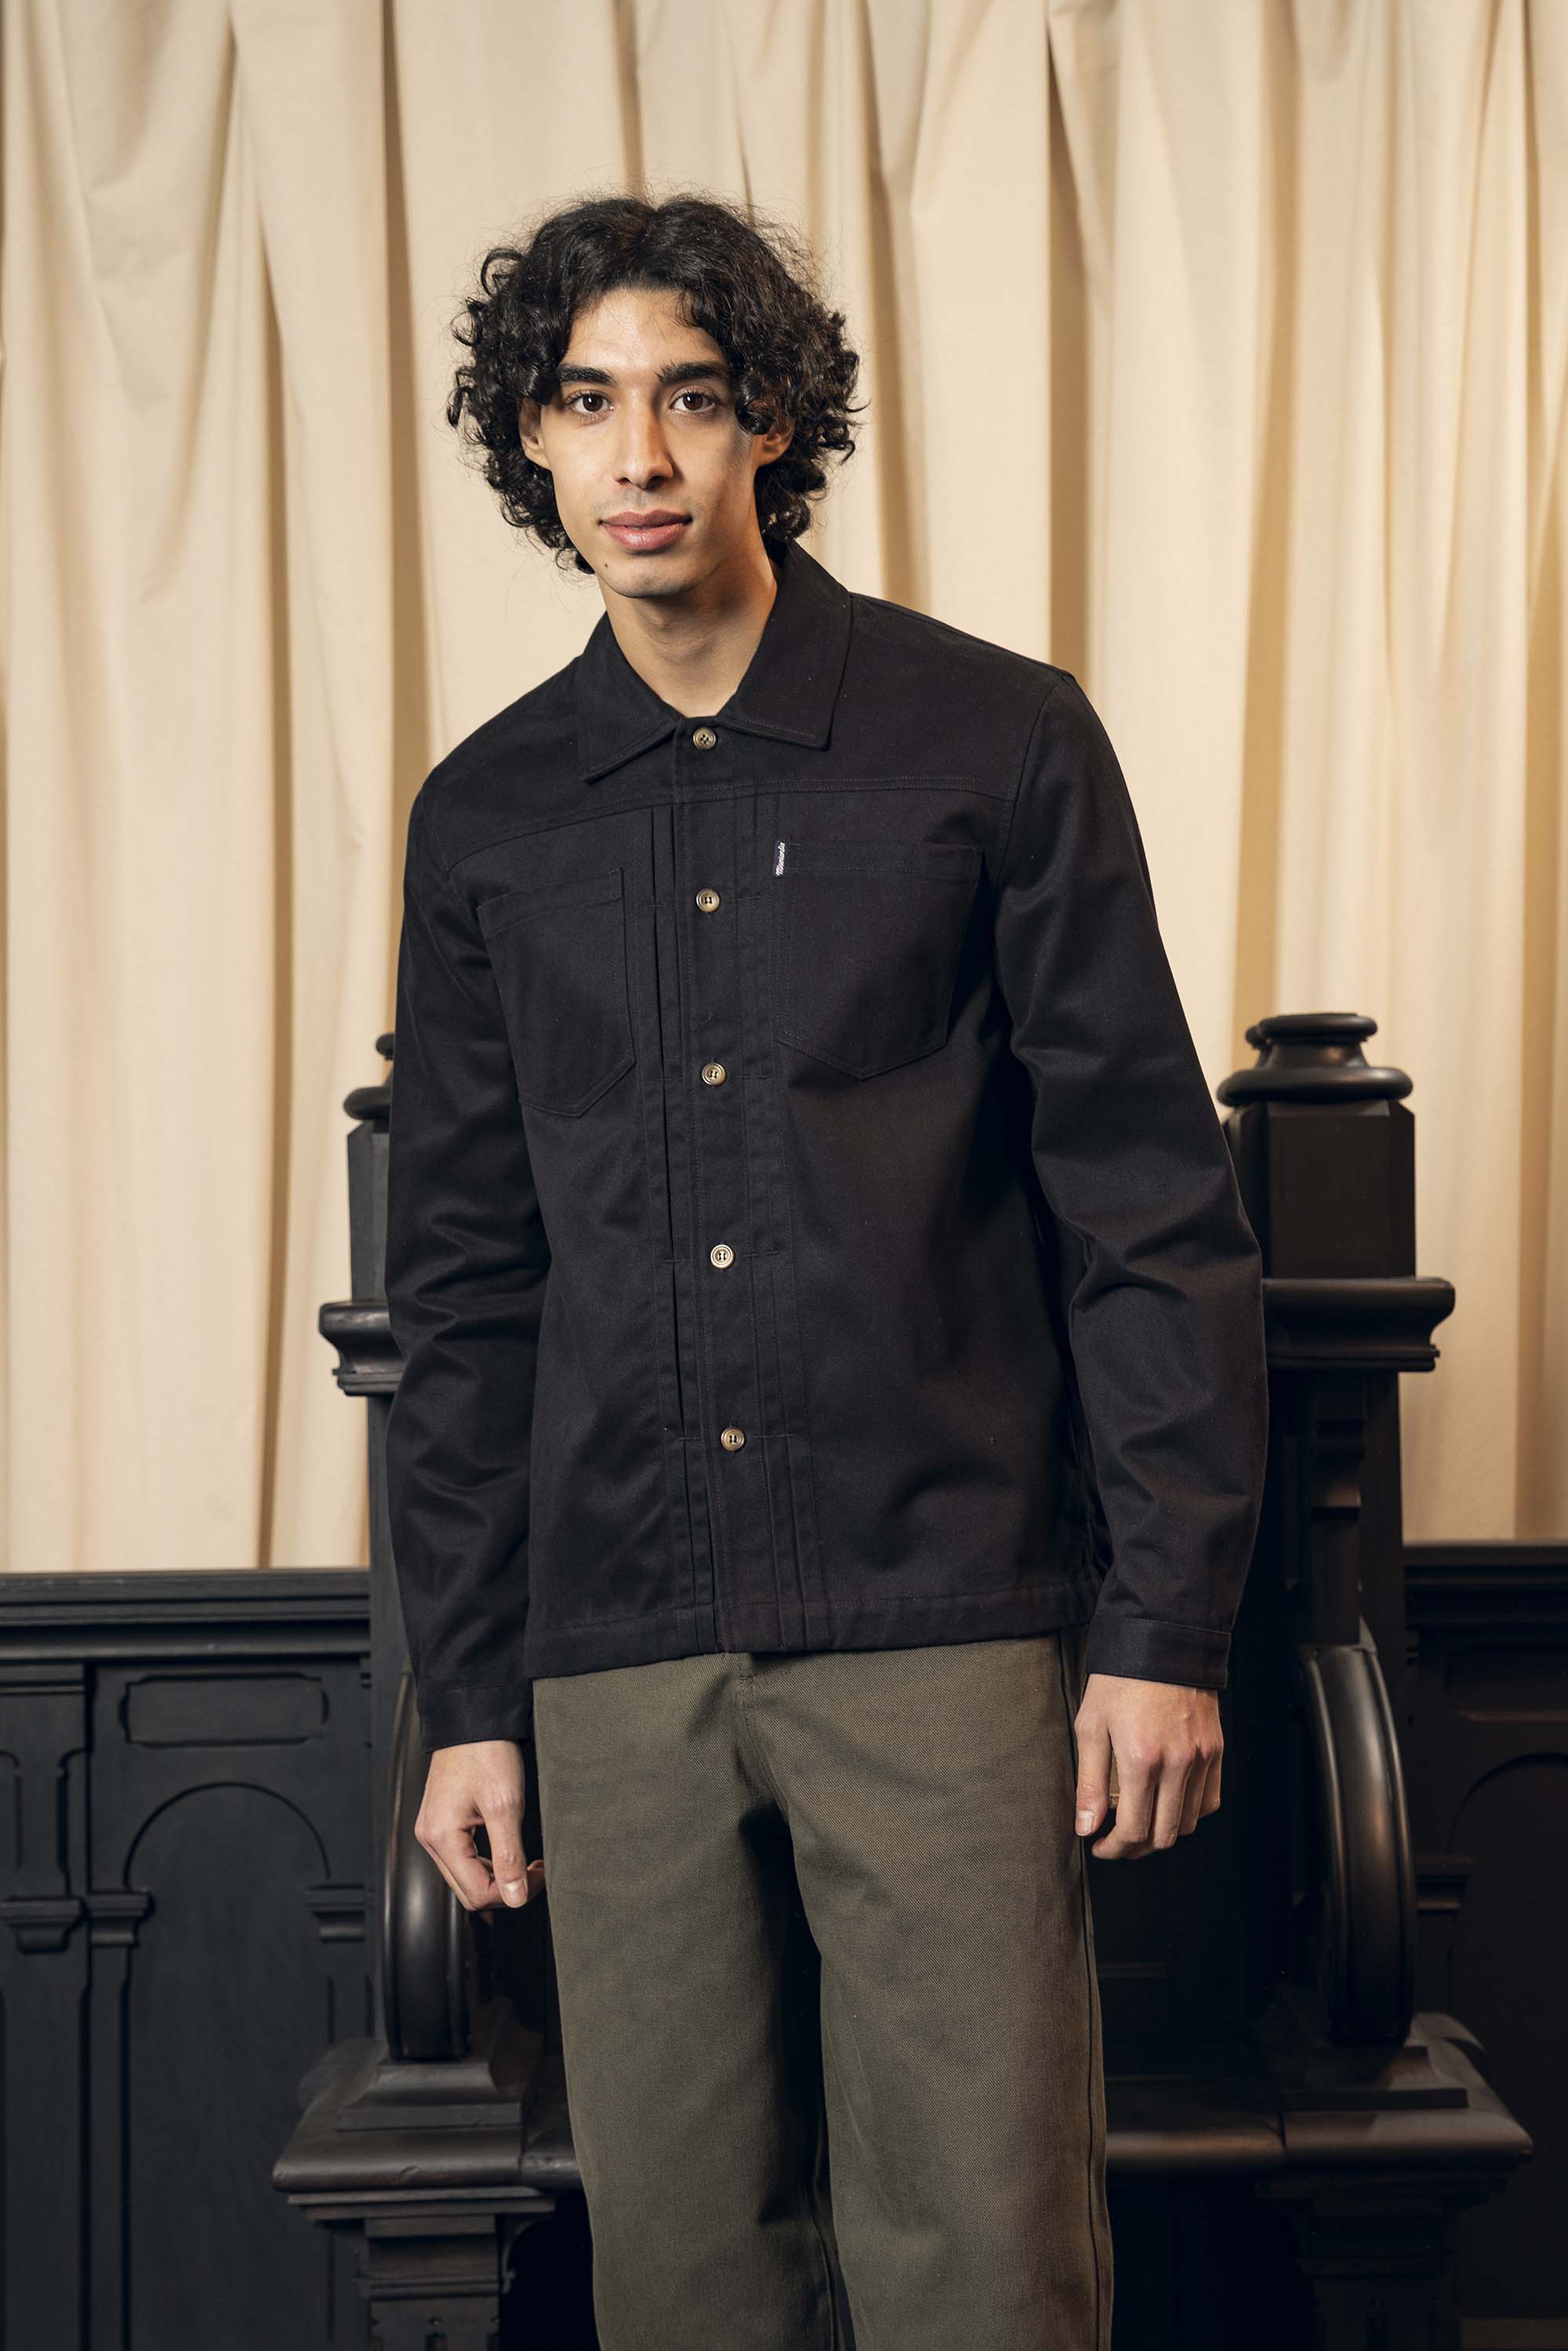 Chemise Wilfredo Noir slim fit, ajustée, chic et élégante, chemise mode fashion commerce équitable